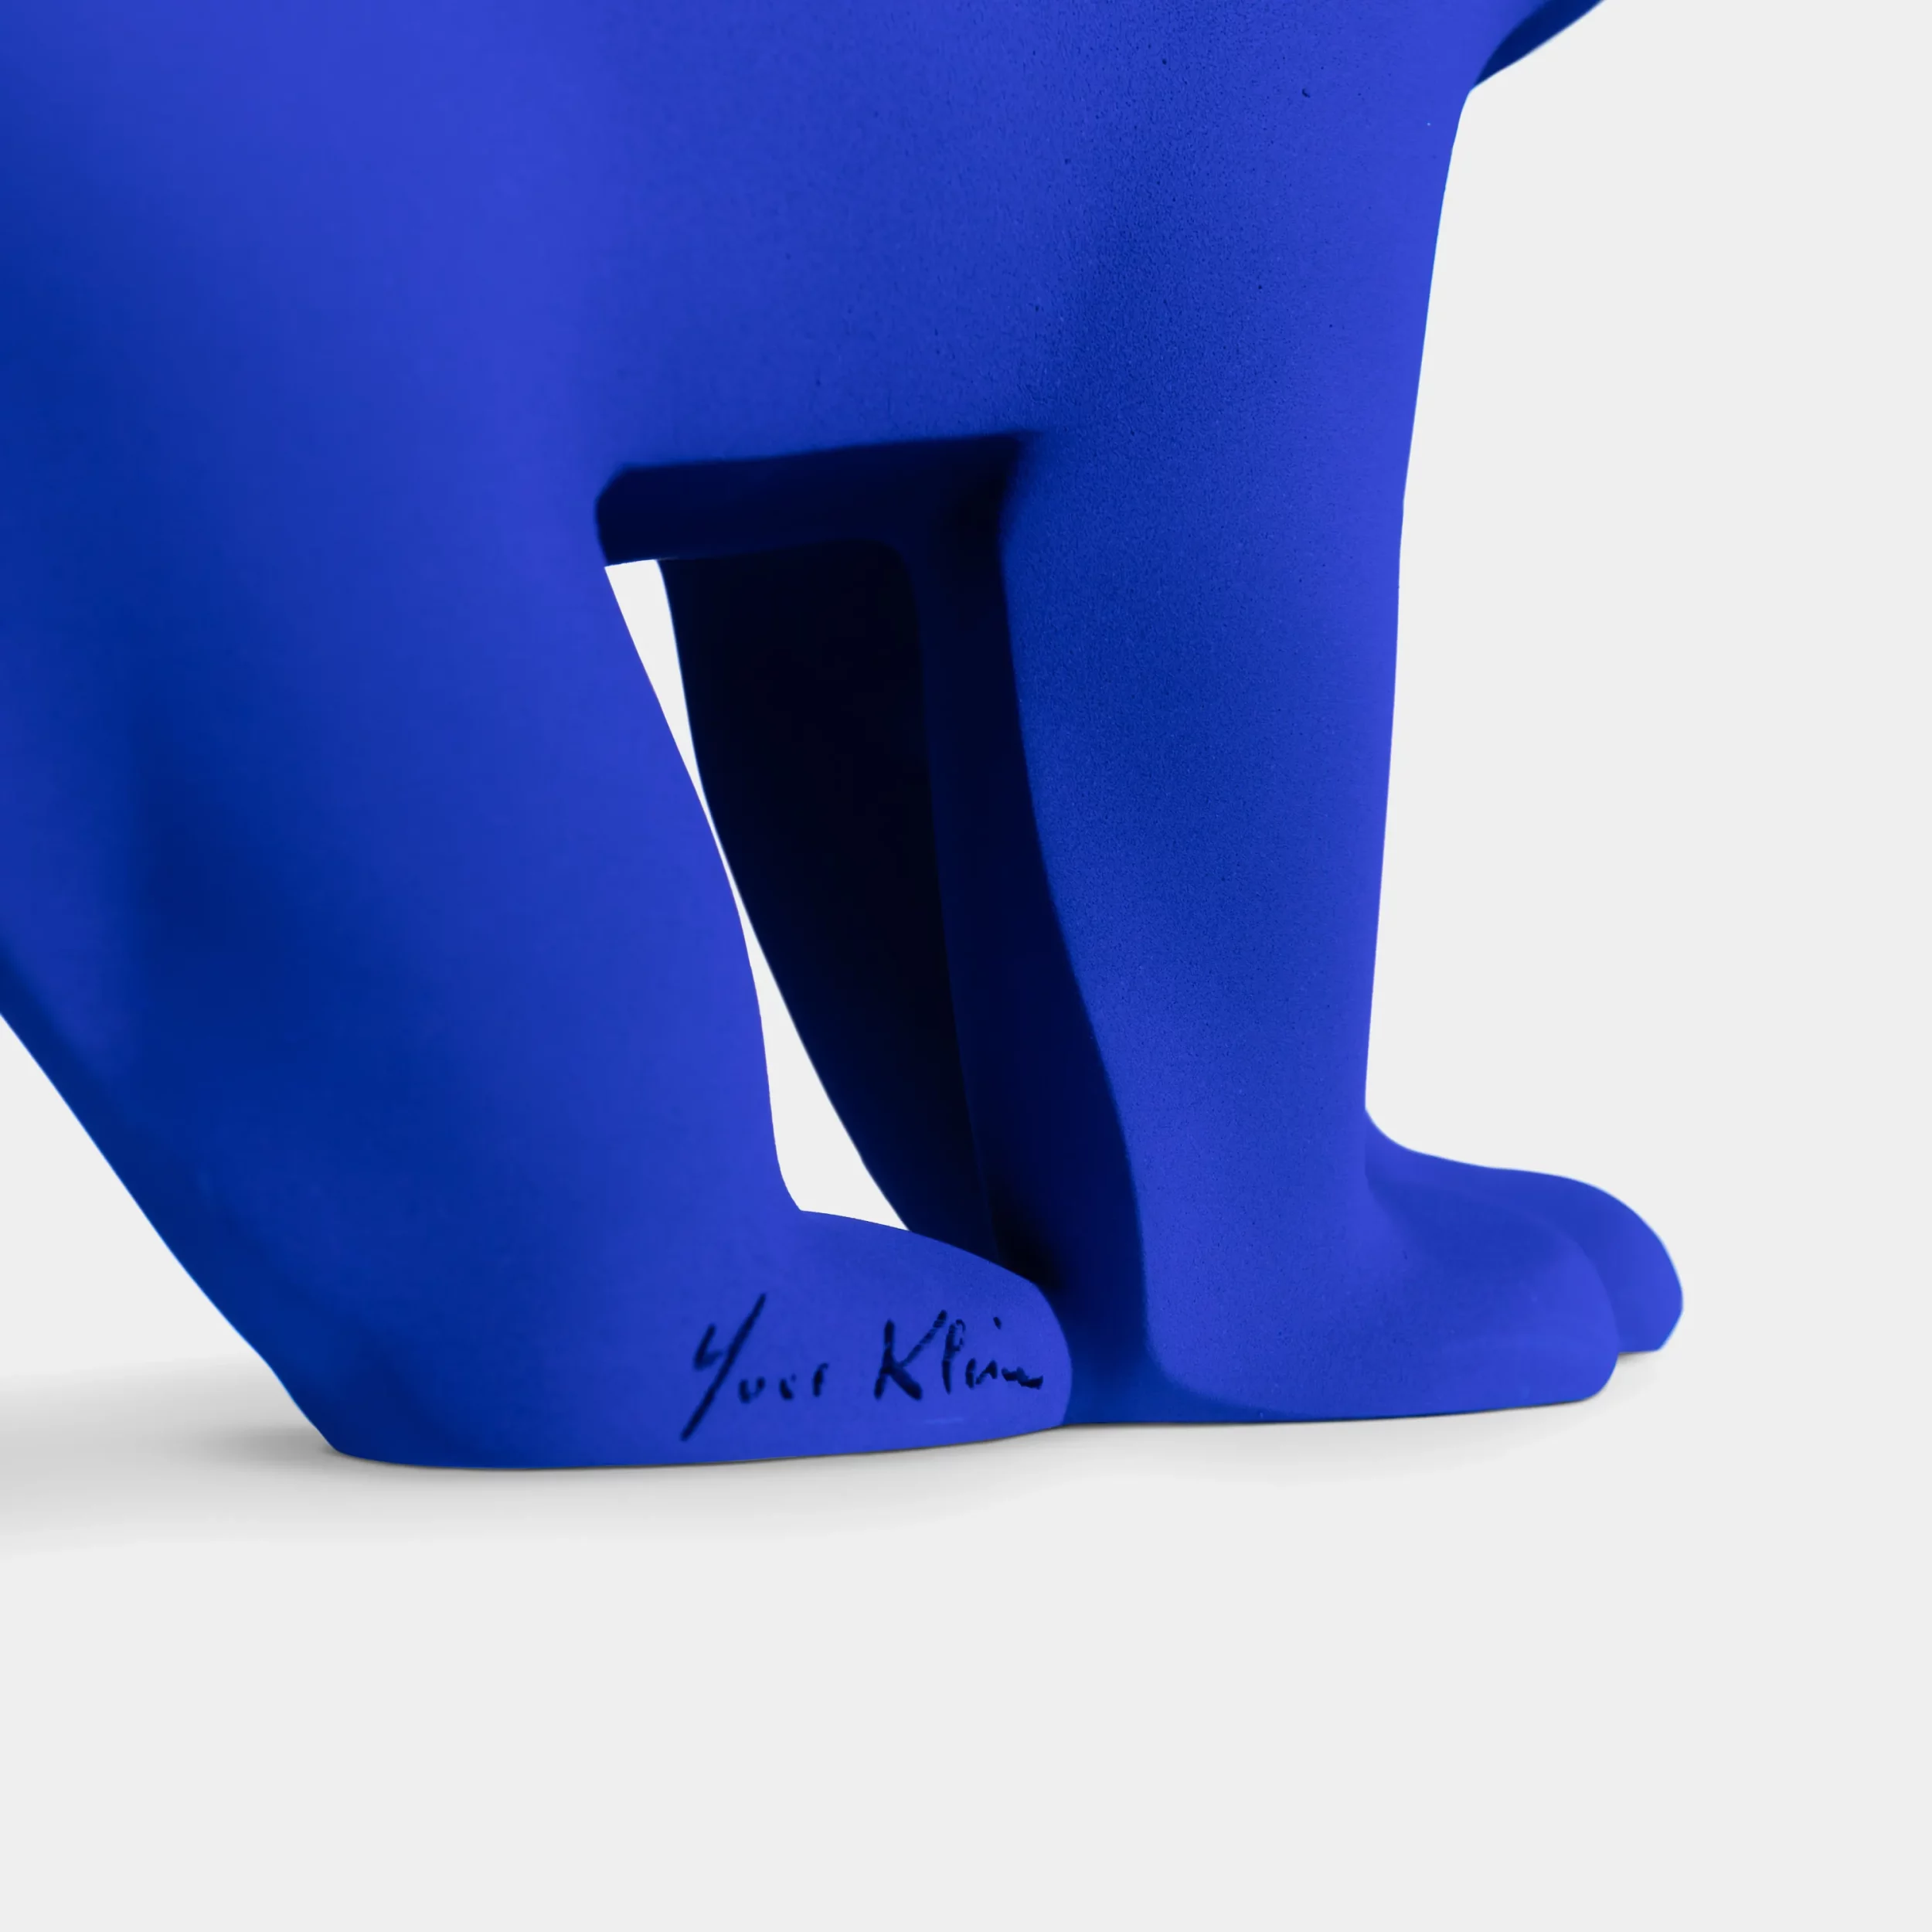 L'ours Pompon édition Yves Klein patte arrière avec signature Yves Klein